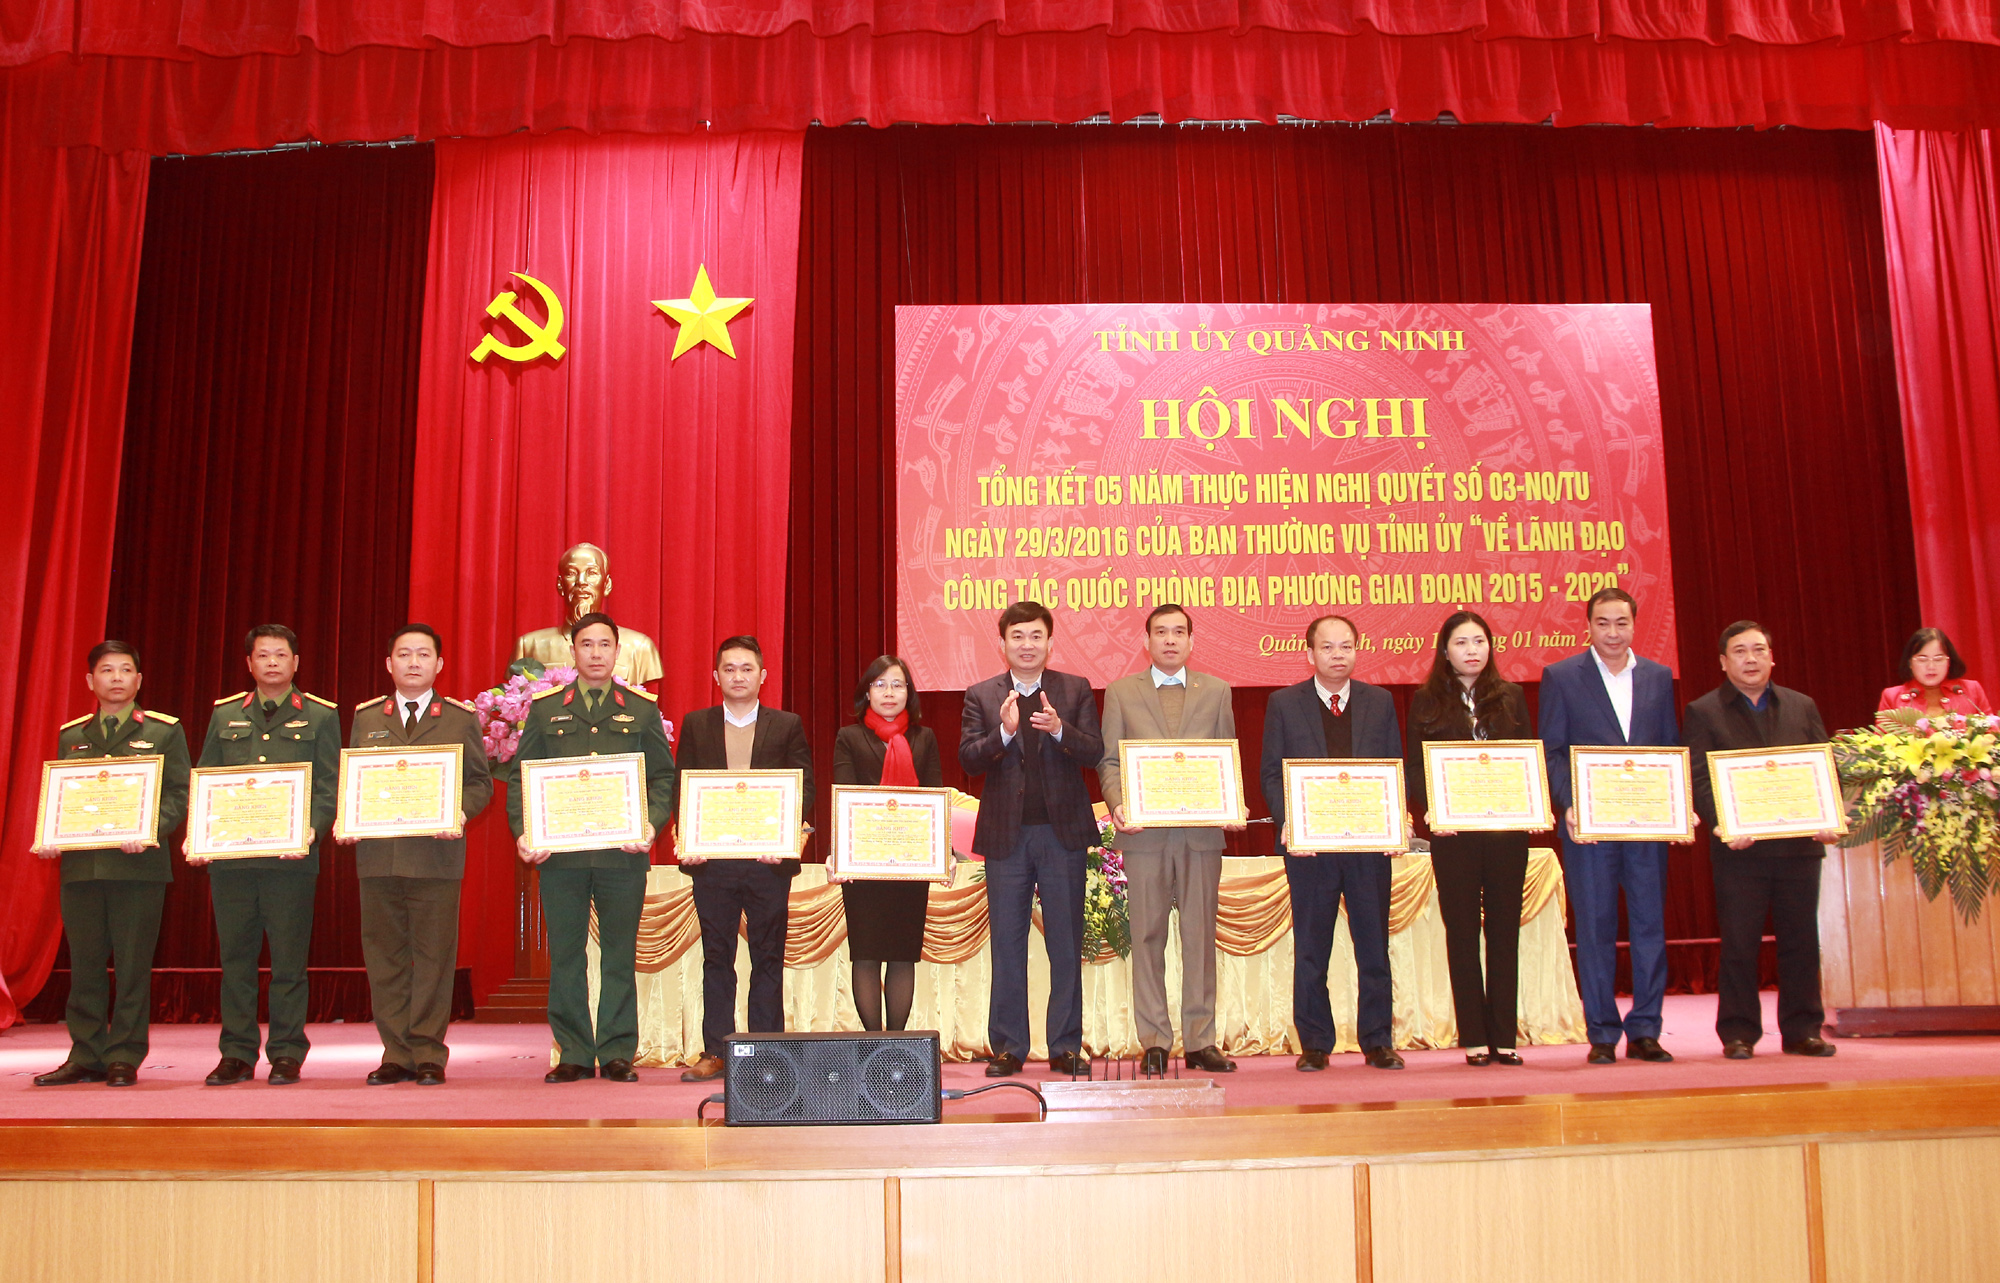 Đồng chí Ngô Hoàng Ngân, Phó Bí thư Thường trực Tỉnh ủy, trao tặng Bằng khen của UBND tỉnh cho các cá nhân có thành tích xuất sắc.